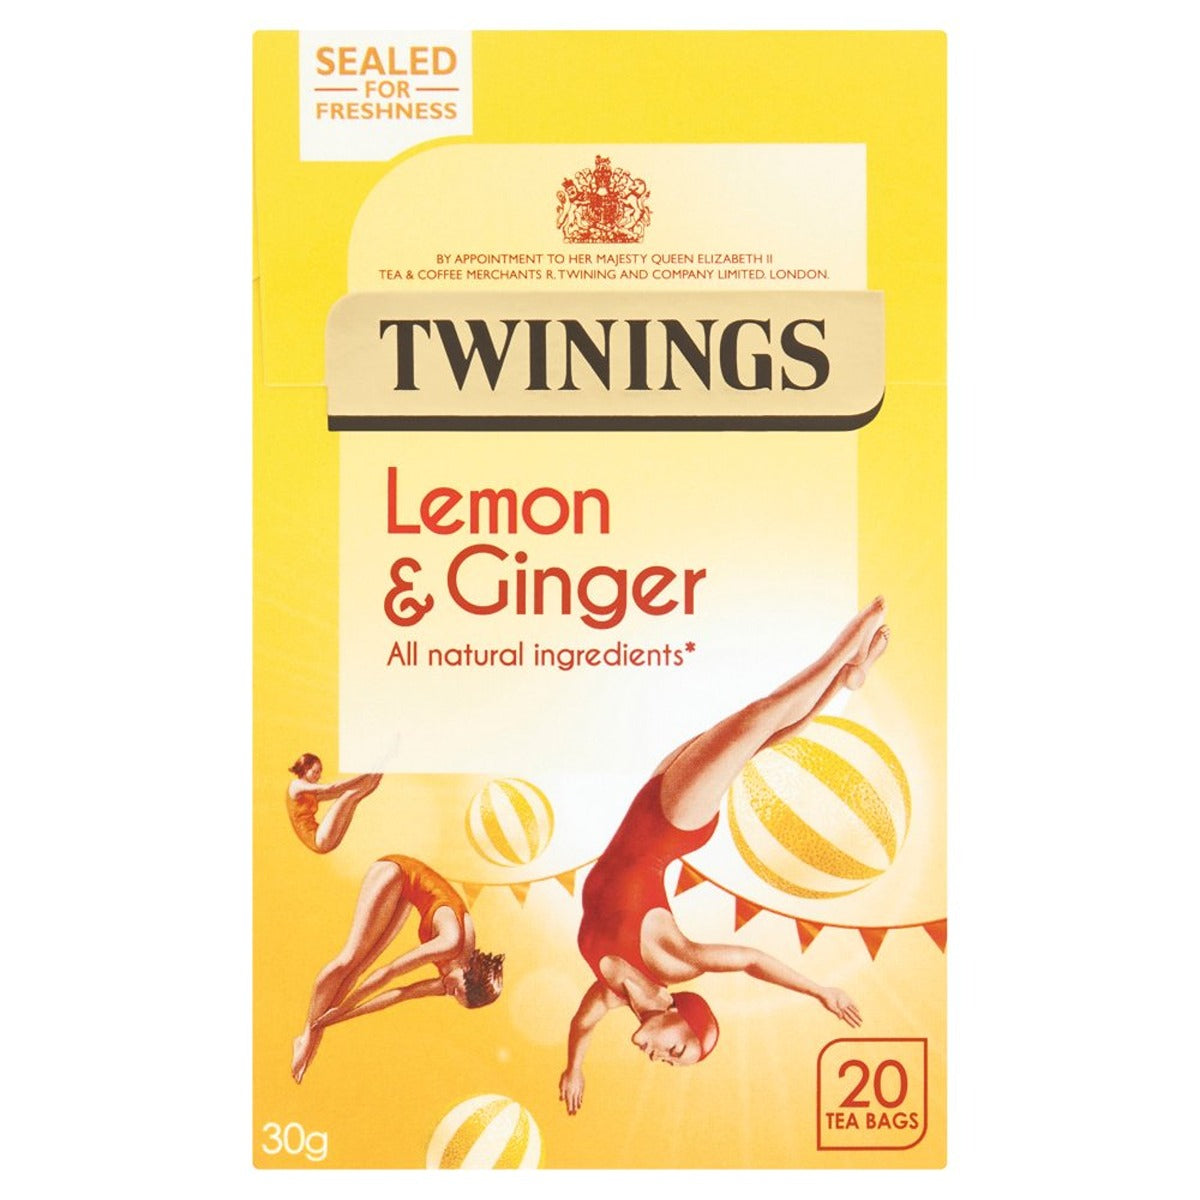 Twinings - Lemon & Ginger Tea - 20 Tea Bags.